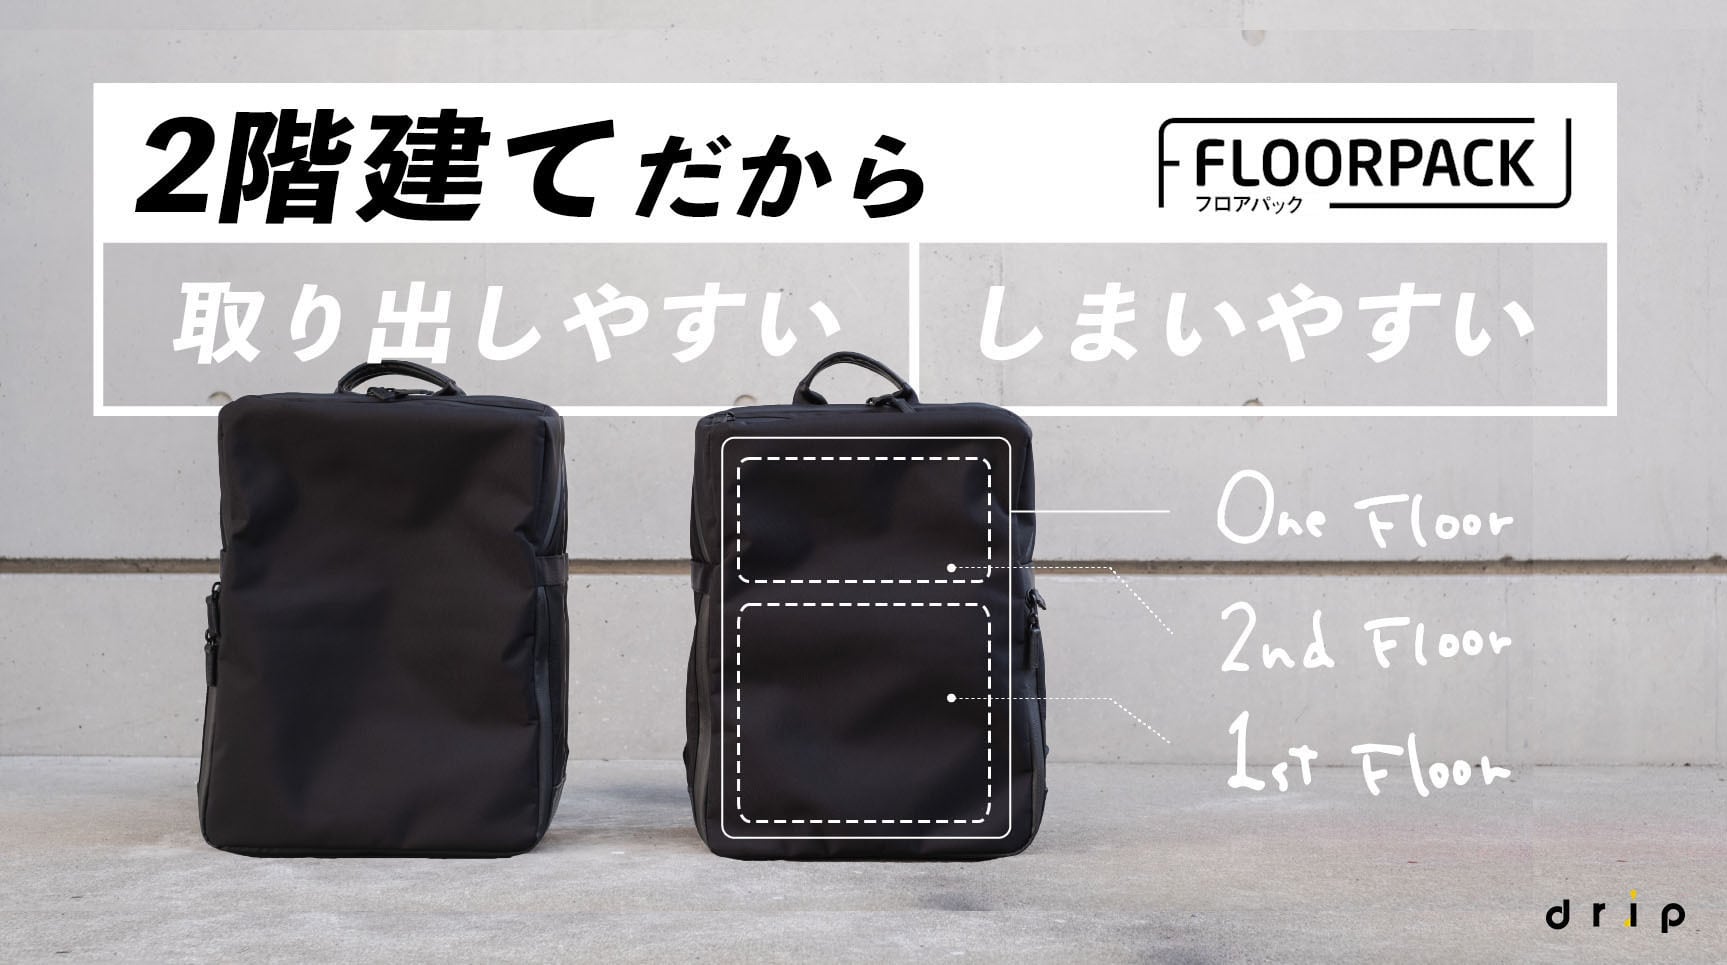 FLOORPACK【drip】 0